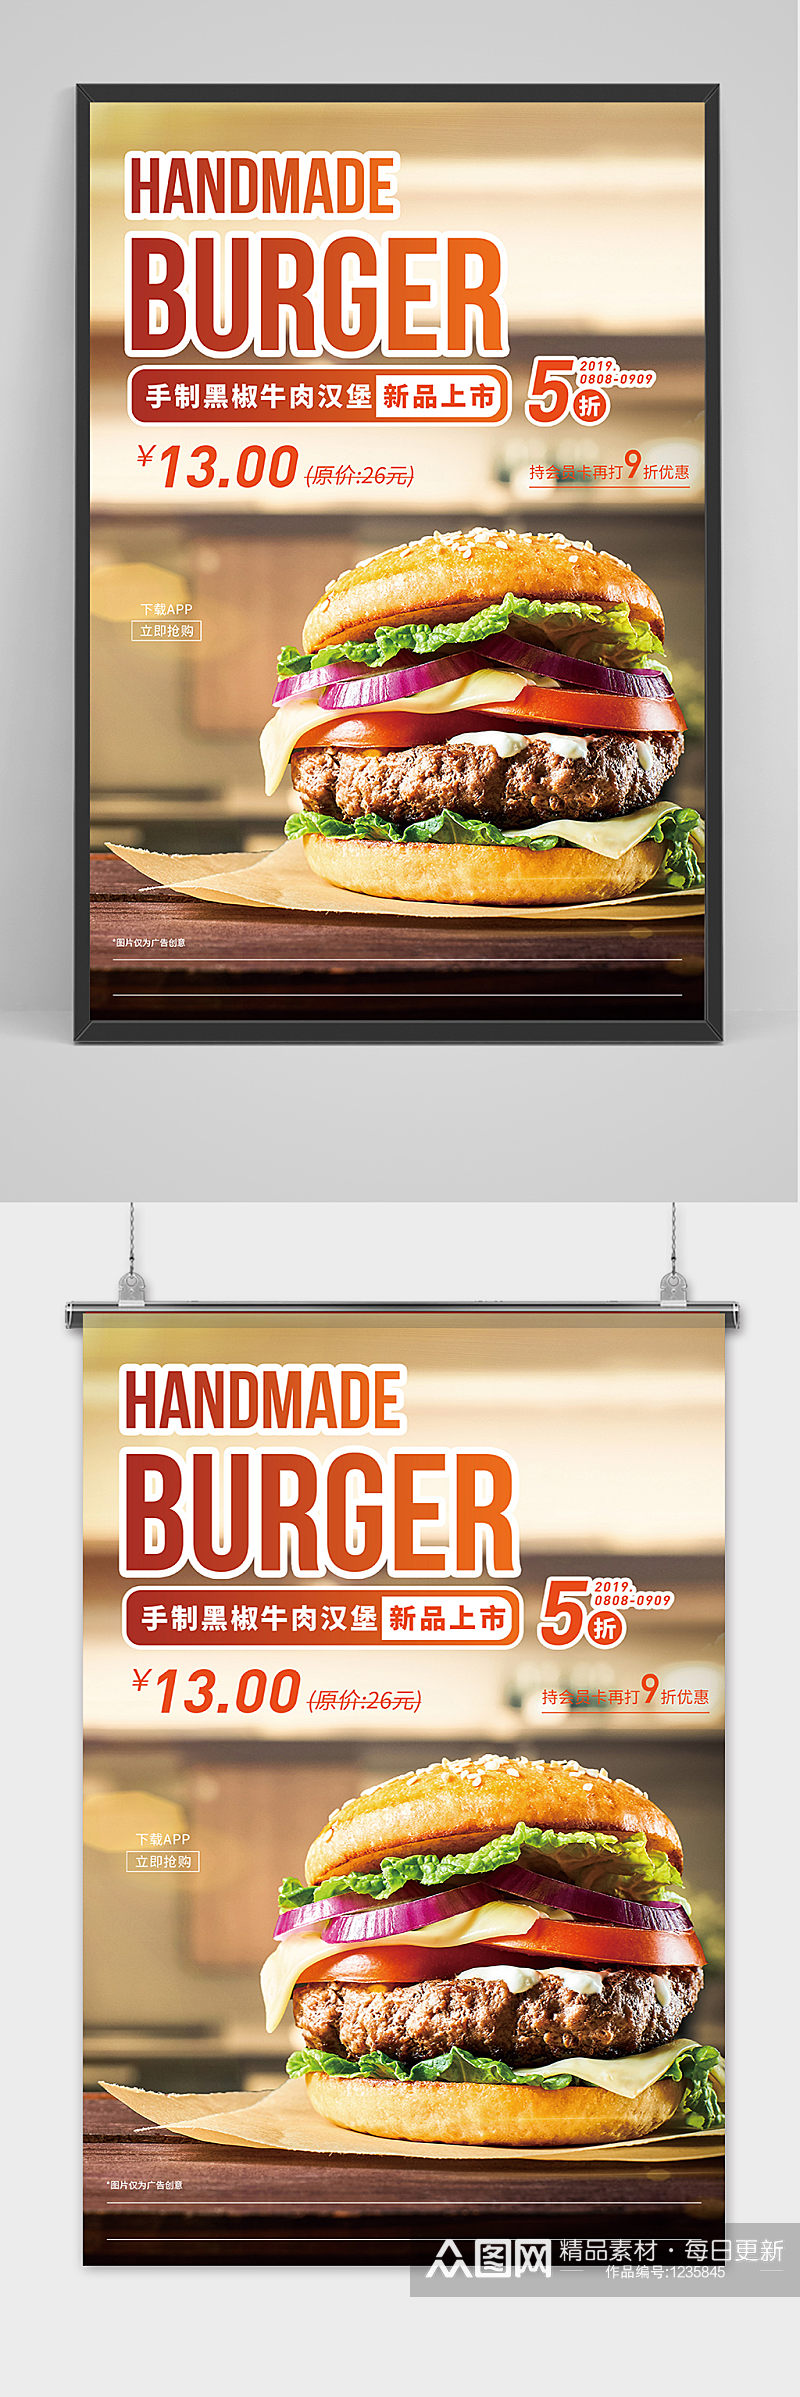 时尚创意汉堡包宣传海报素材